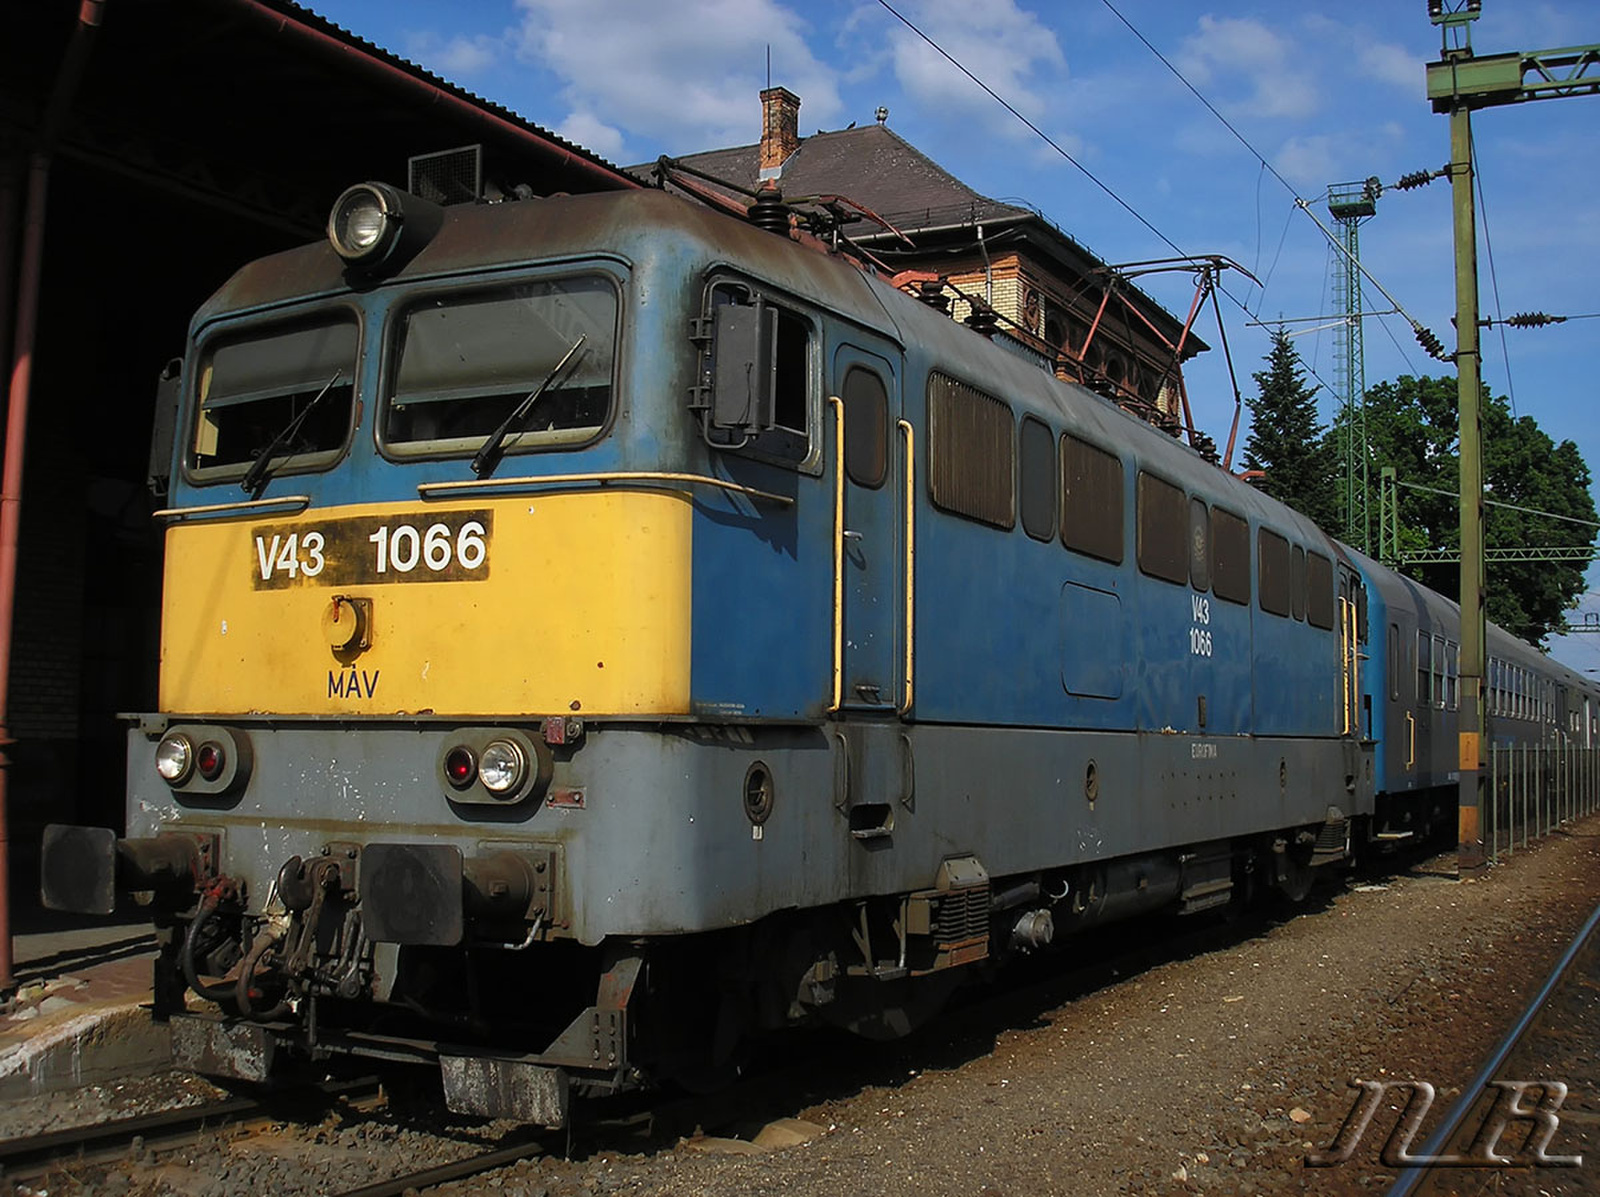 V43 1066